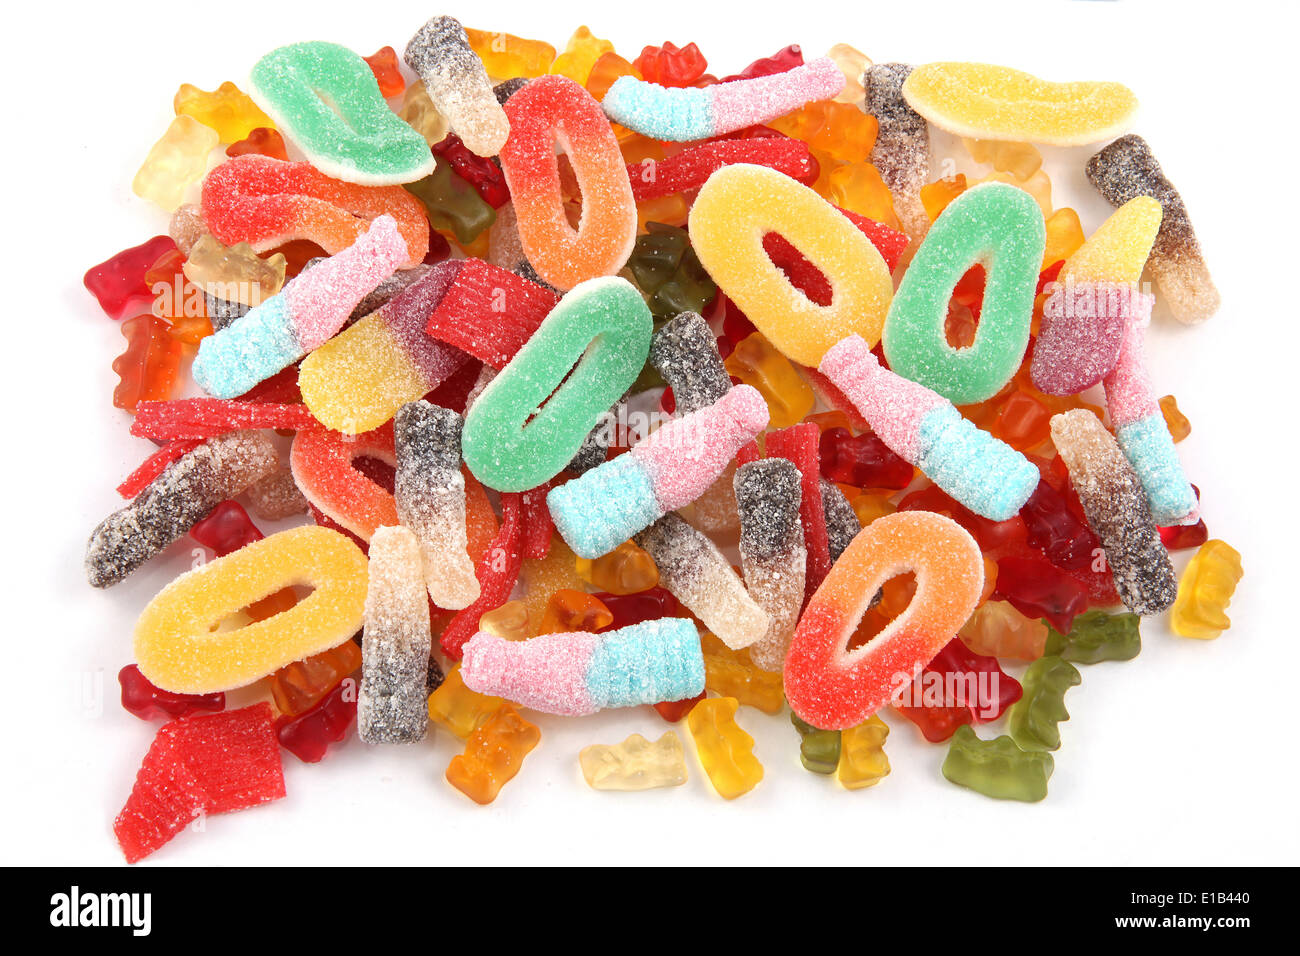 Kinder Gummibärchen Bonbons oder Süßspeisen in Multi Farben und einer Vielzahl von Formen. Stockfoto